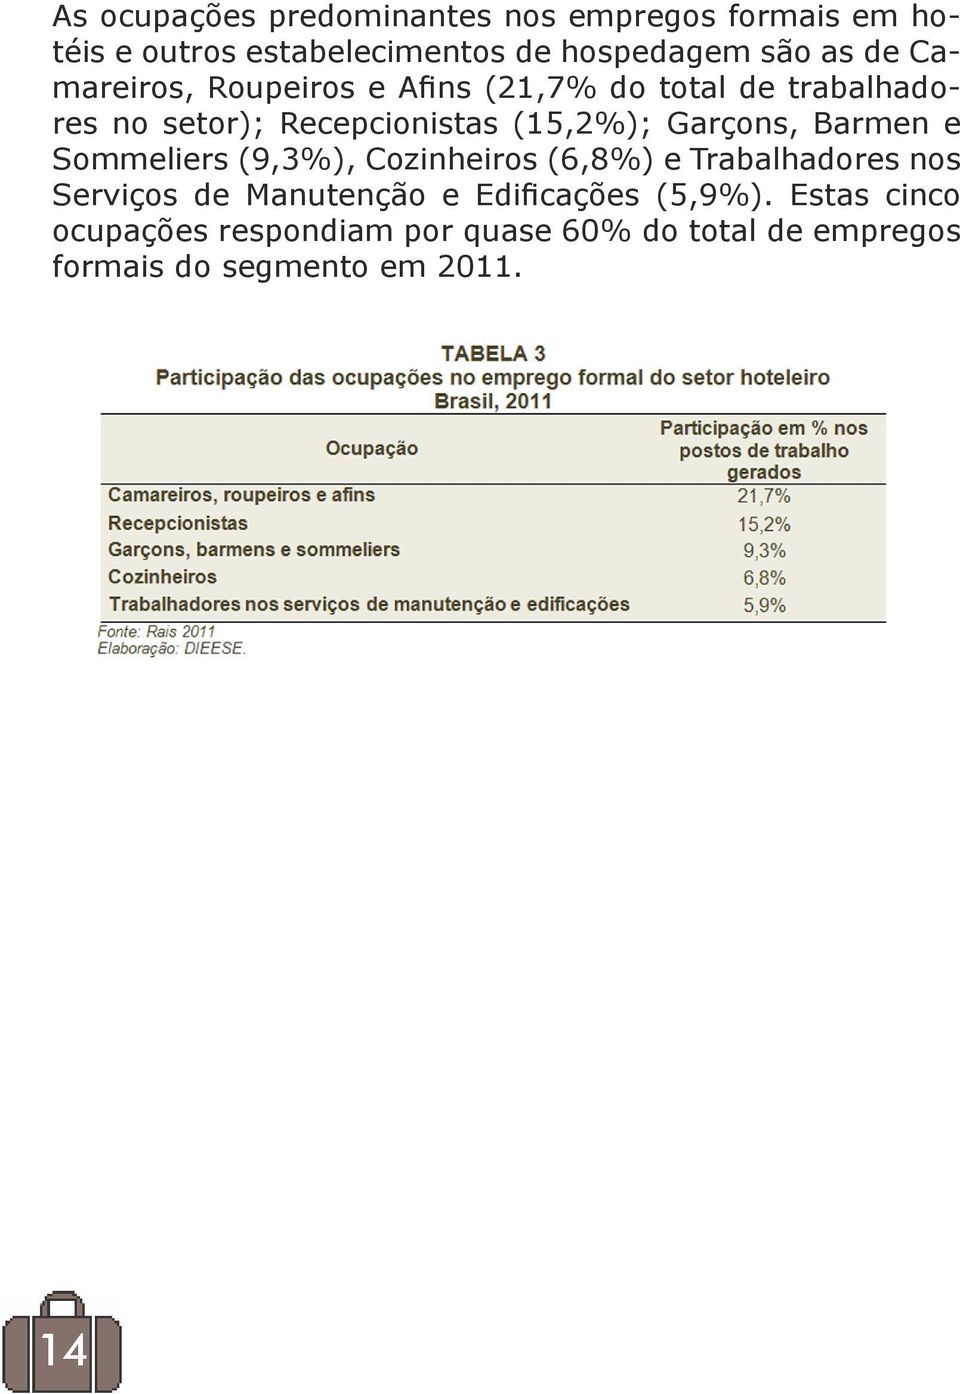 Garçons, Barmen e Sommeliers (9,3%), Cozinheiros (6,8%) e Trabalhadores nos Serviços de Manutenção e